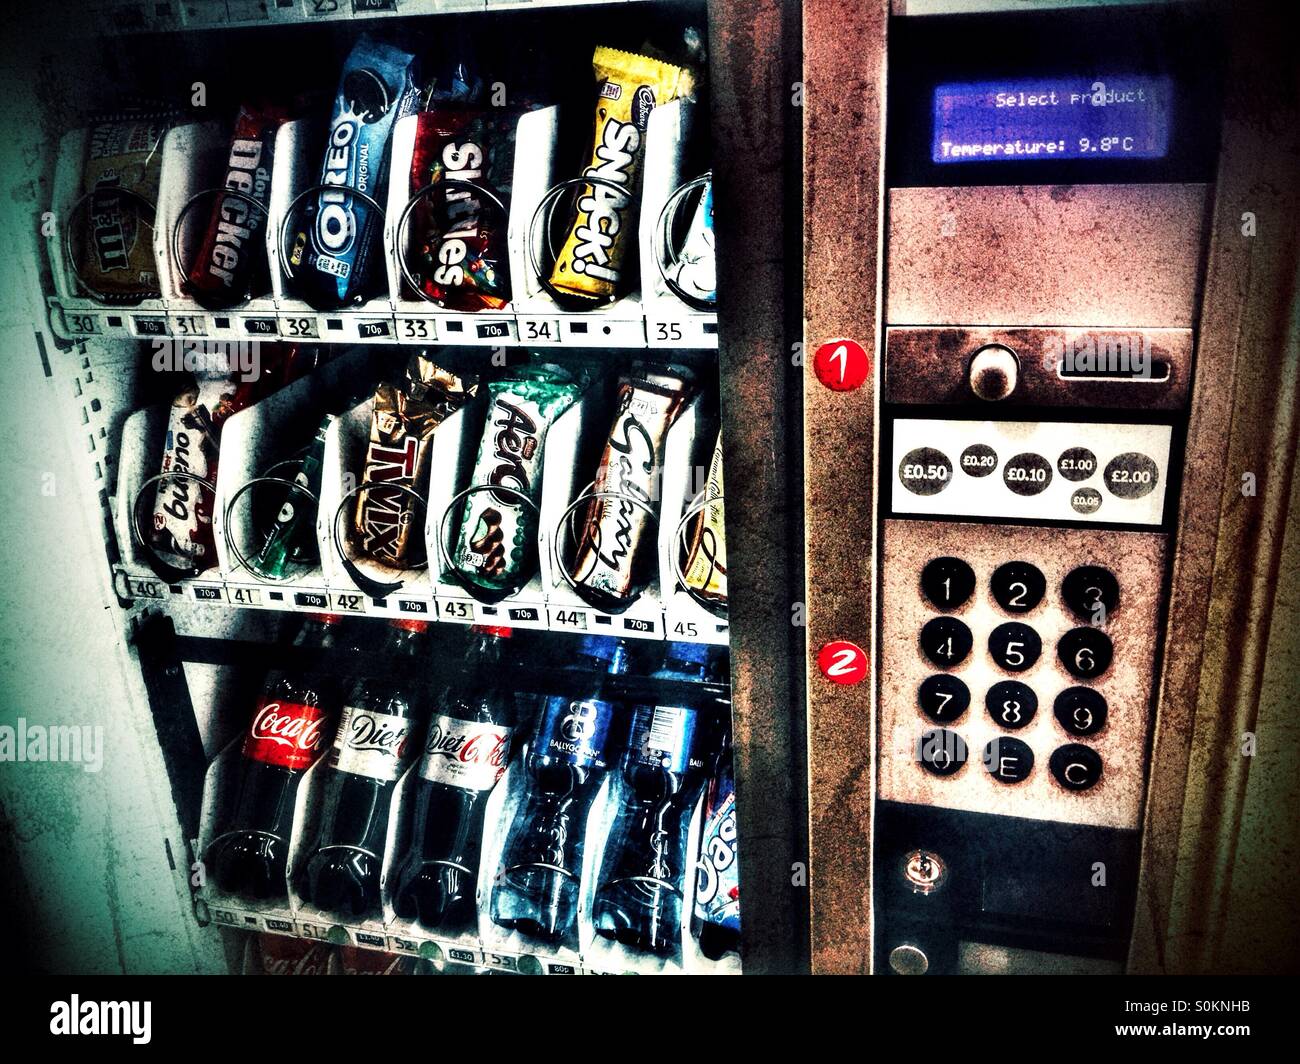 Vending machine Stock Photo